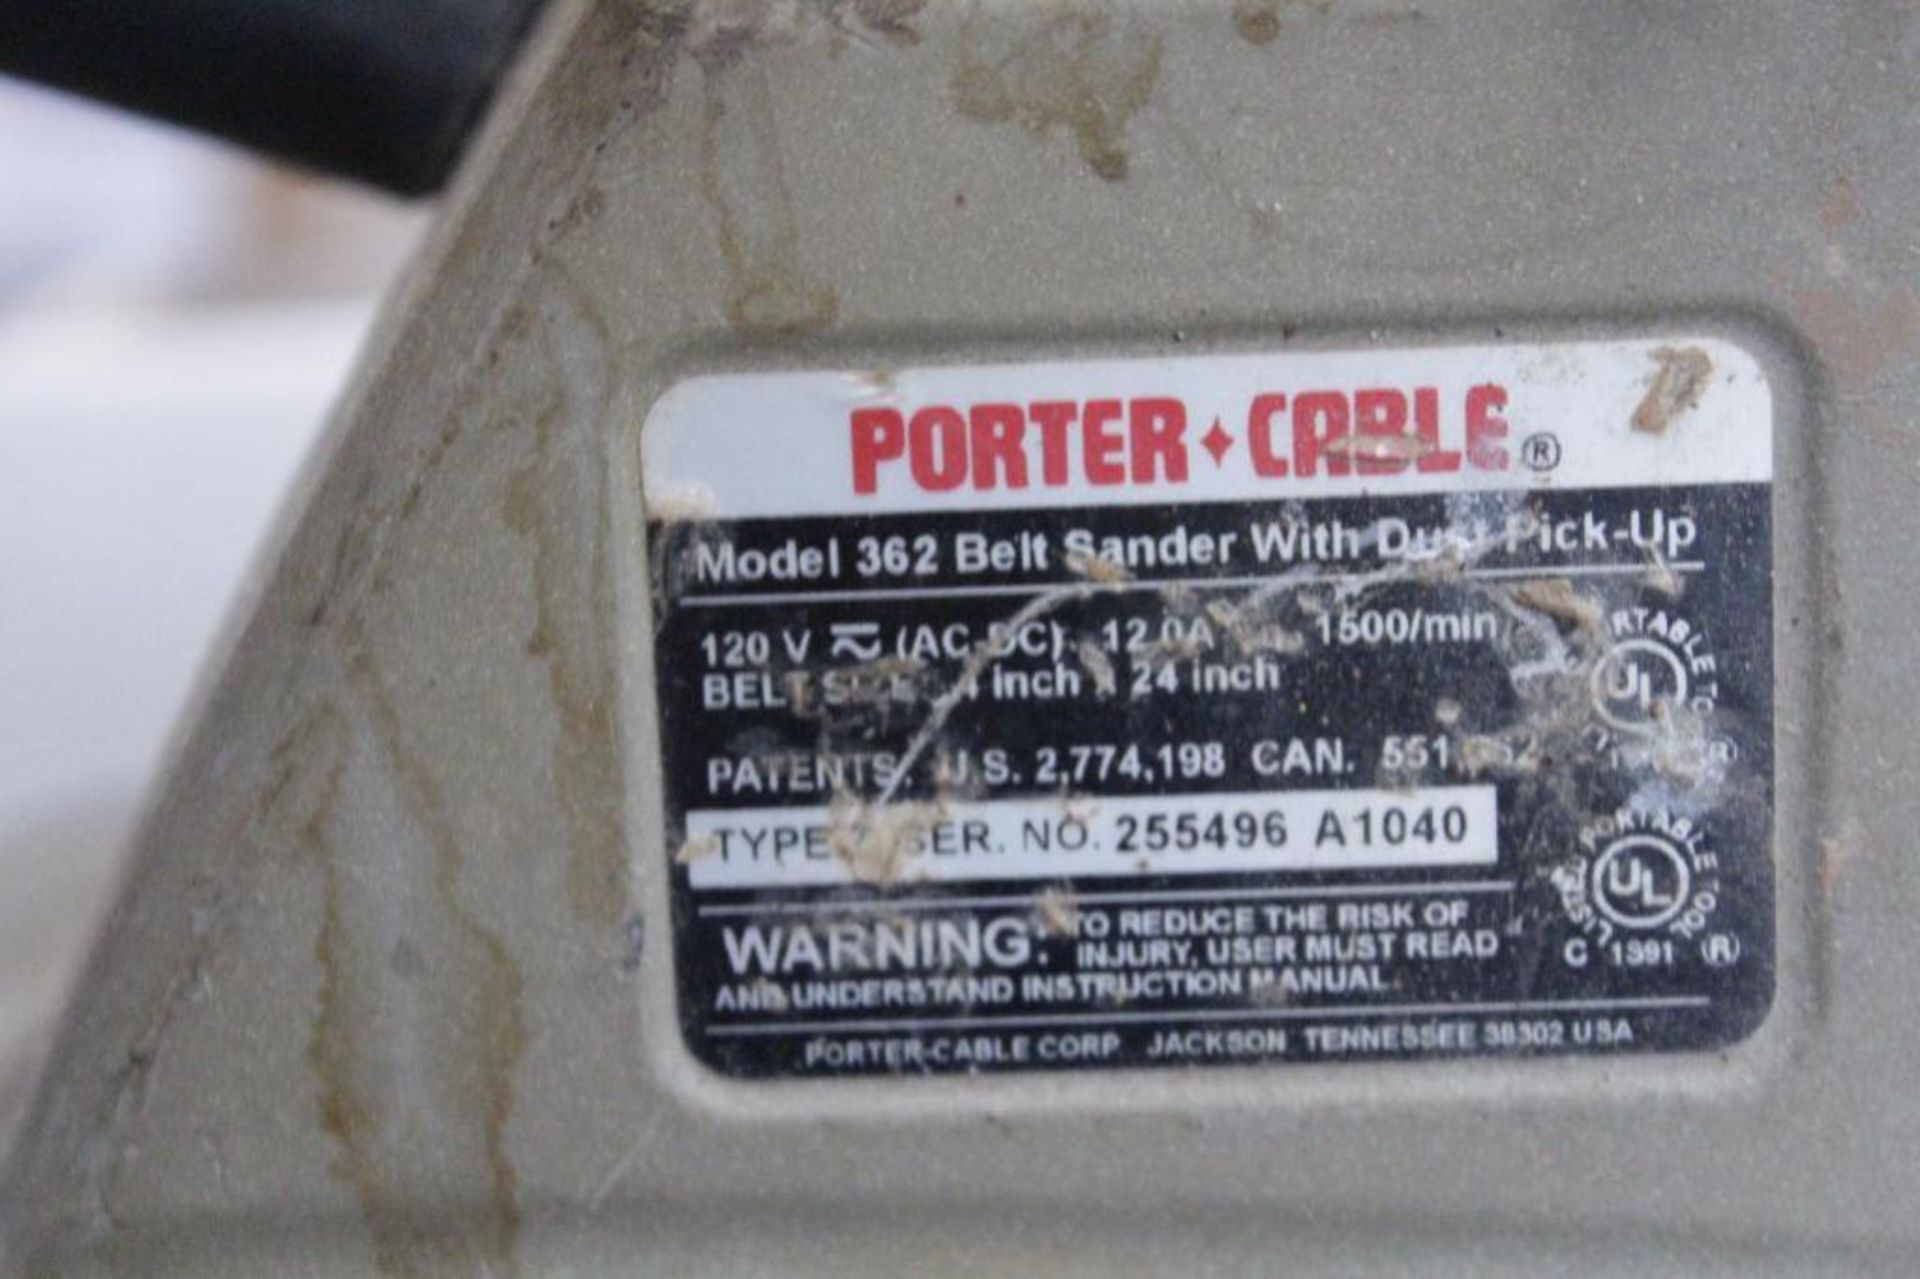 Porter Cable 362 4" x 24" belt sander - Image 2 of 2